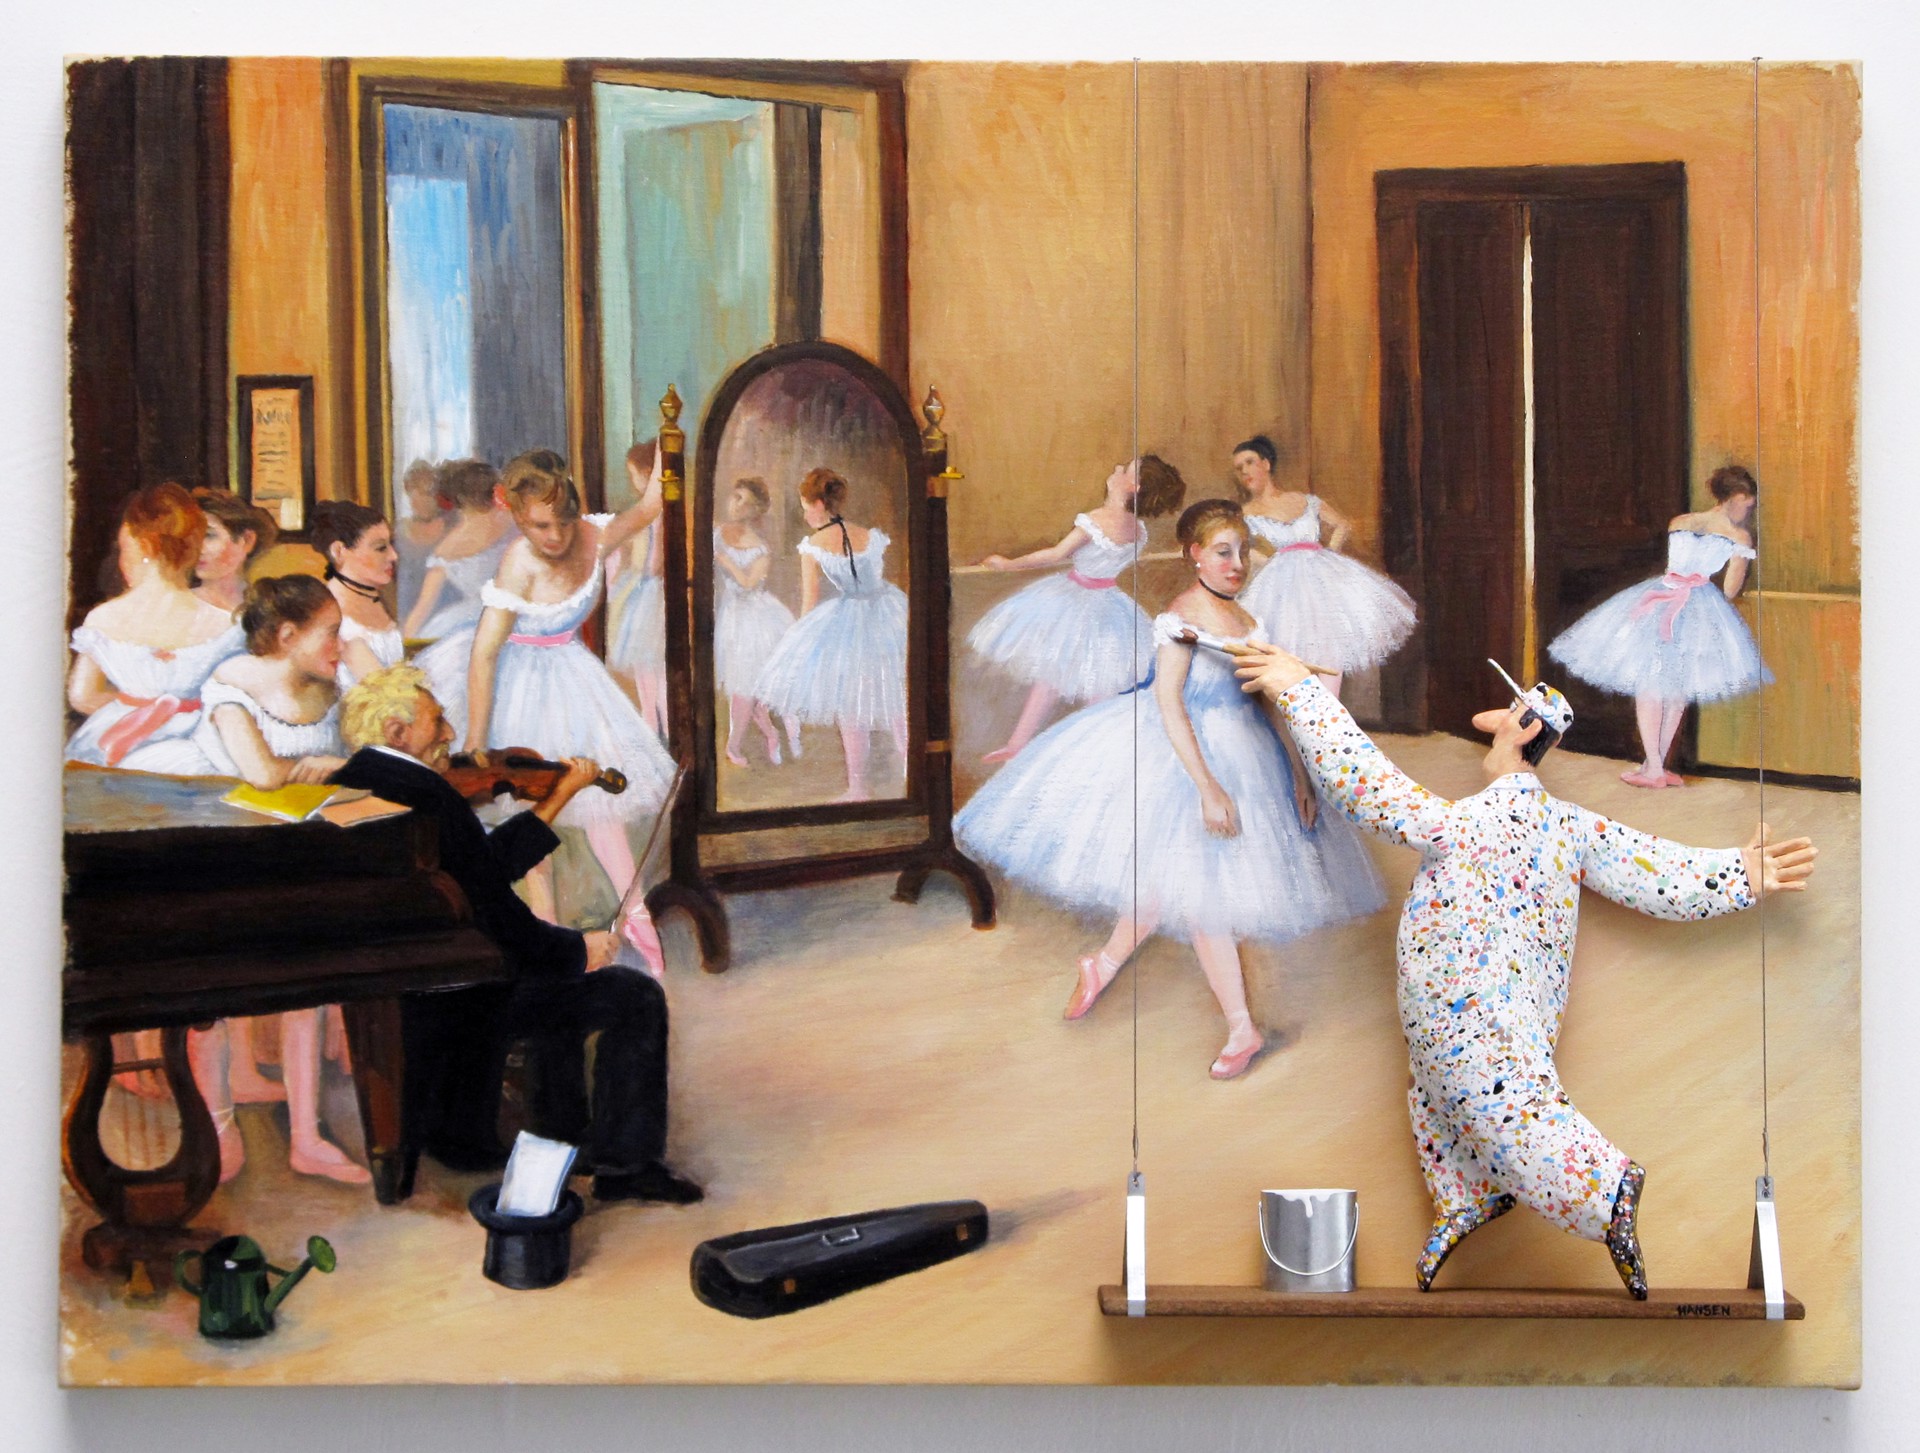 The Dancing Class [Degas] by Stephen Hansen